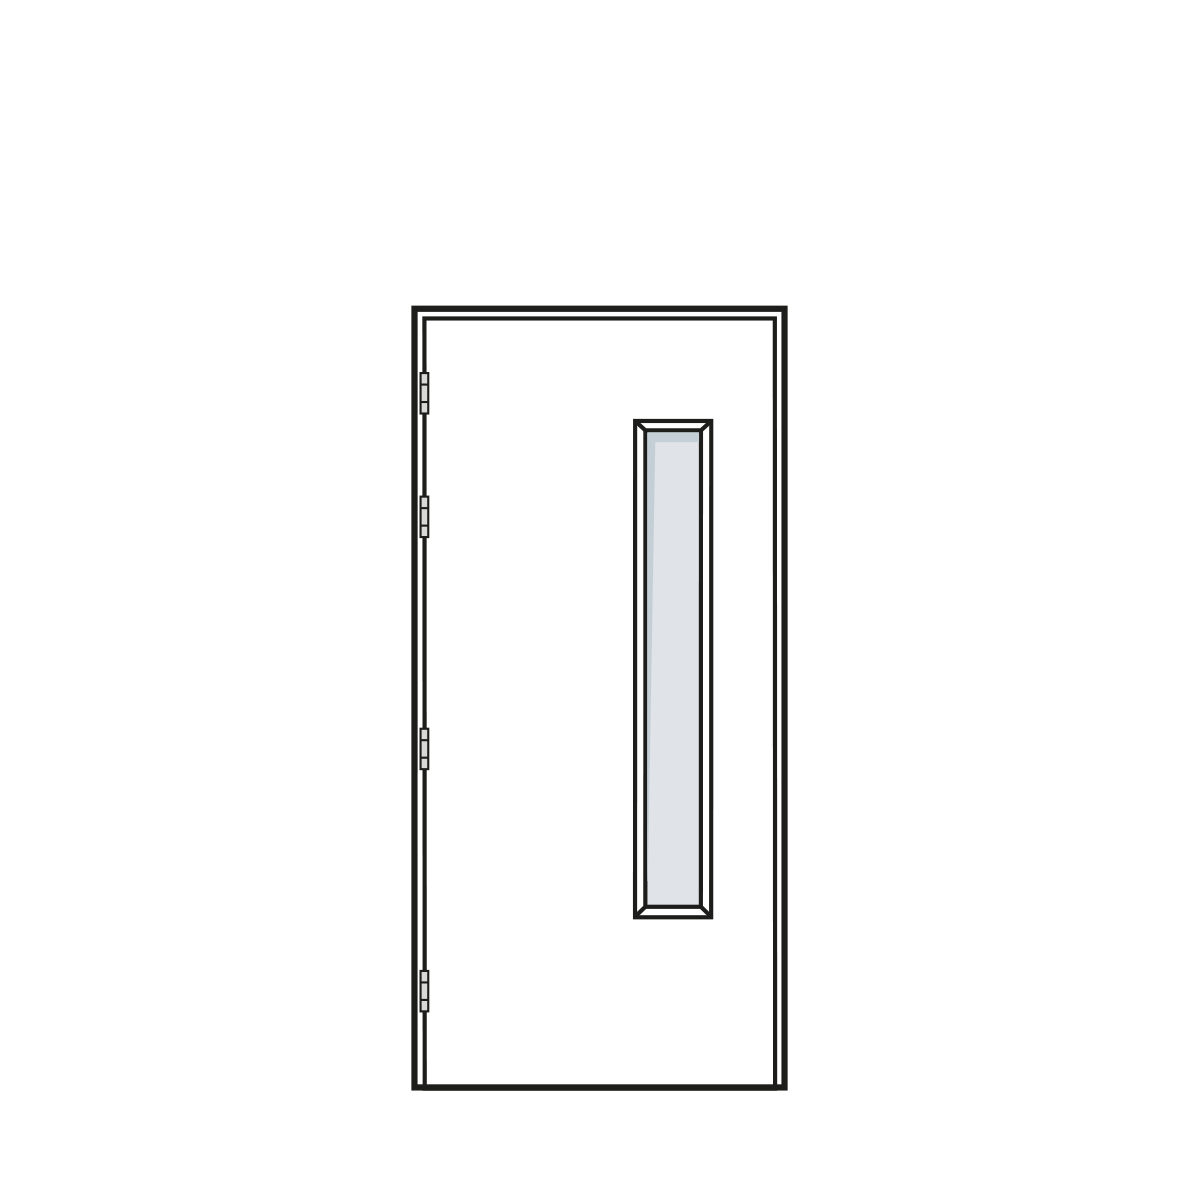 Door Configuration - Single Doorset with Standard Vision Panel - Code S-VP01